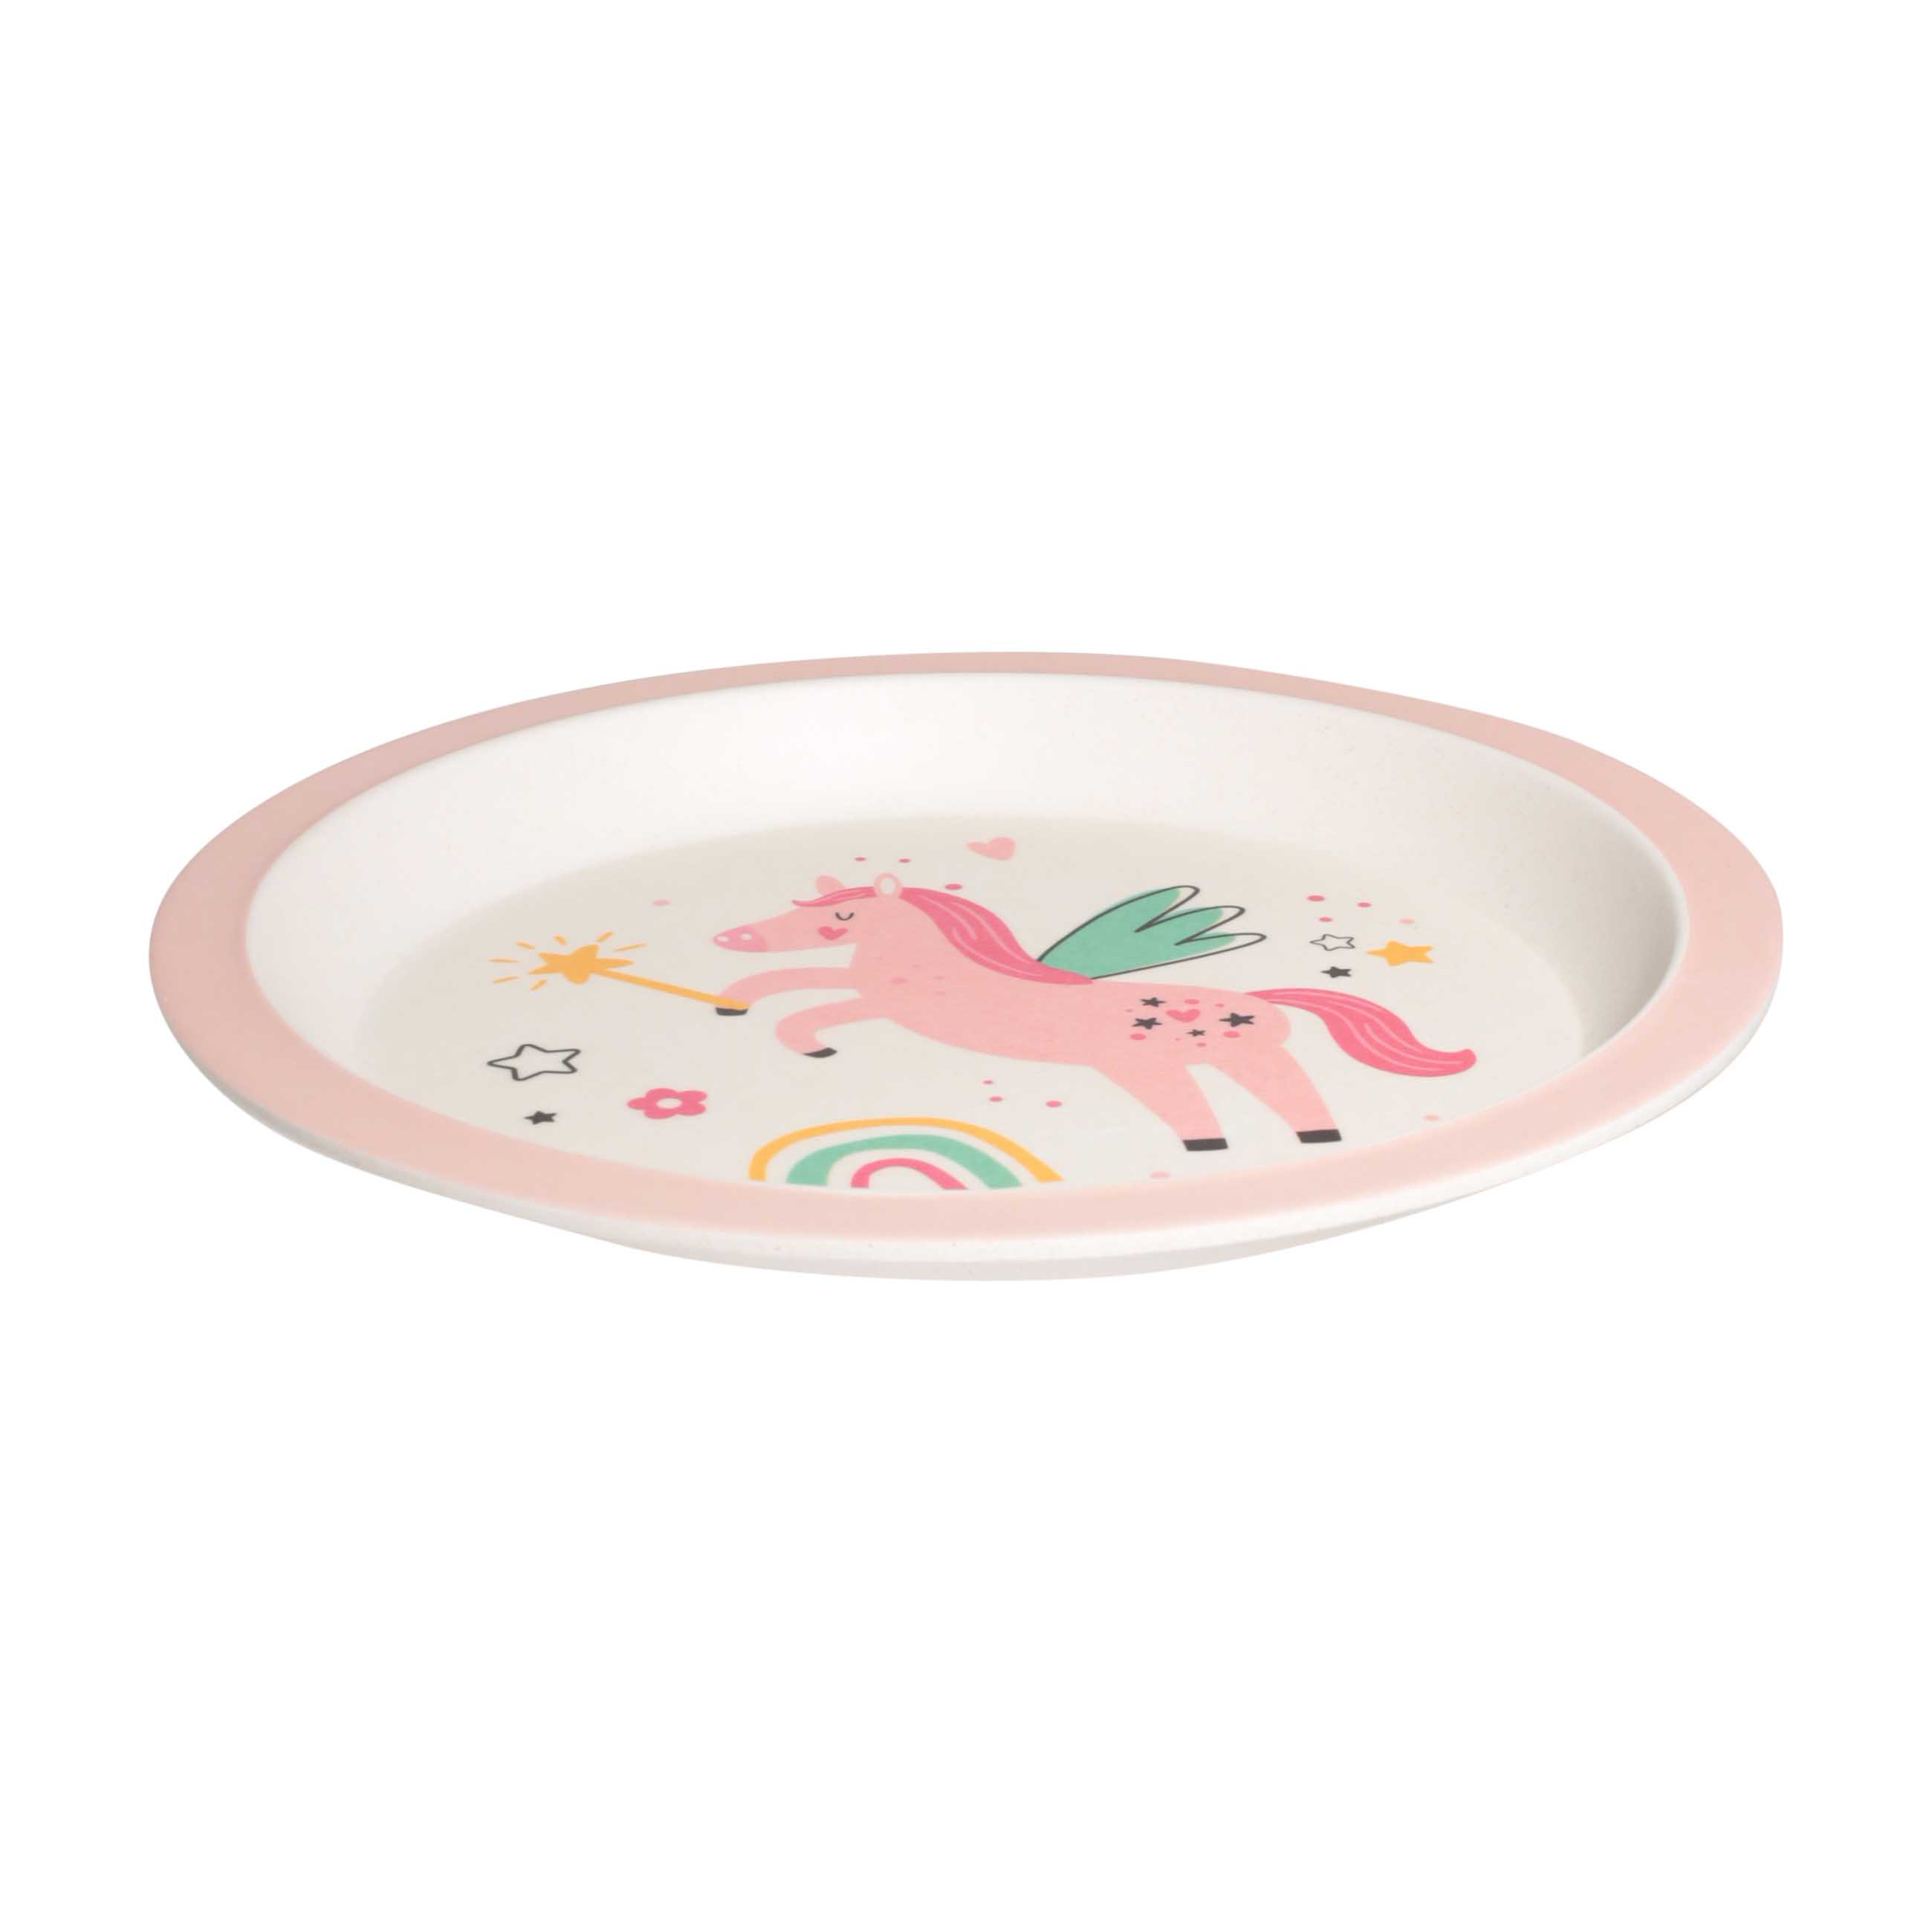 Тарелка закусочная, детская, 21 см, бамбук, розовая, Единорог и радуга, Unicorn изображение № 2